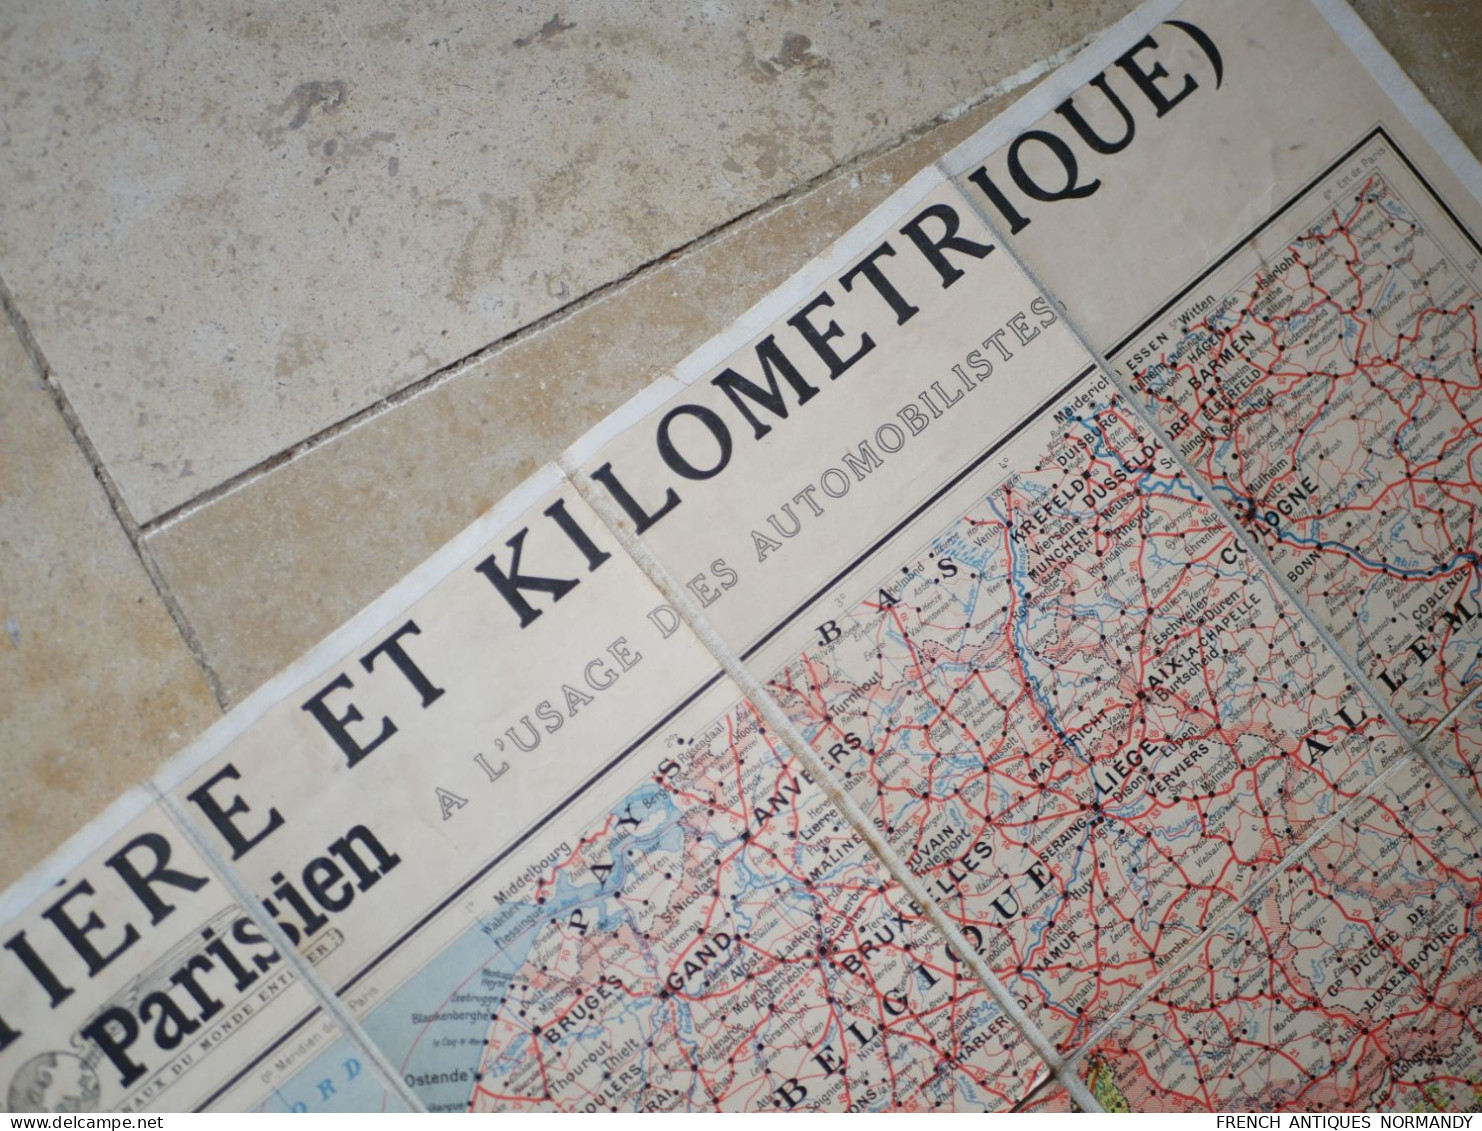 Carte entoilée de la France routière et kilométrique LE PETIT PARISIEN 1:1200000  Des années 20 Bel état d'usage